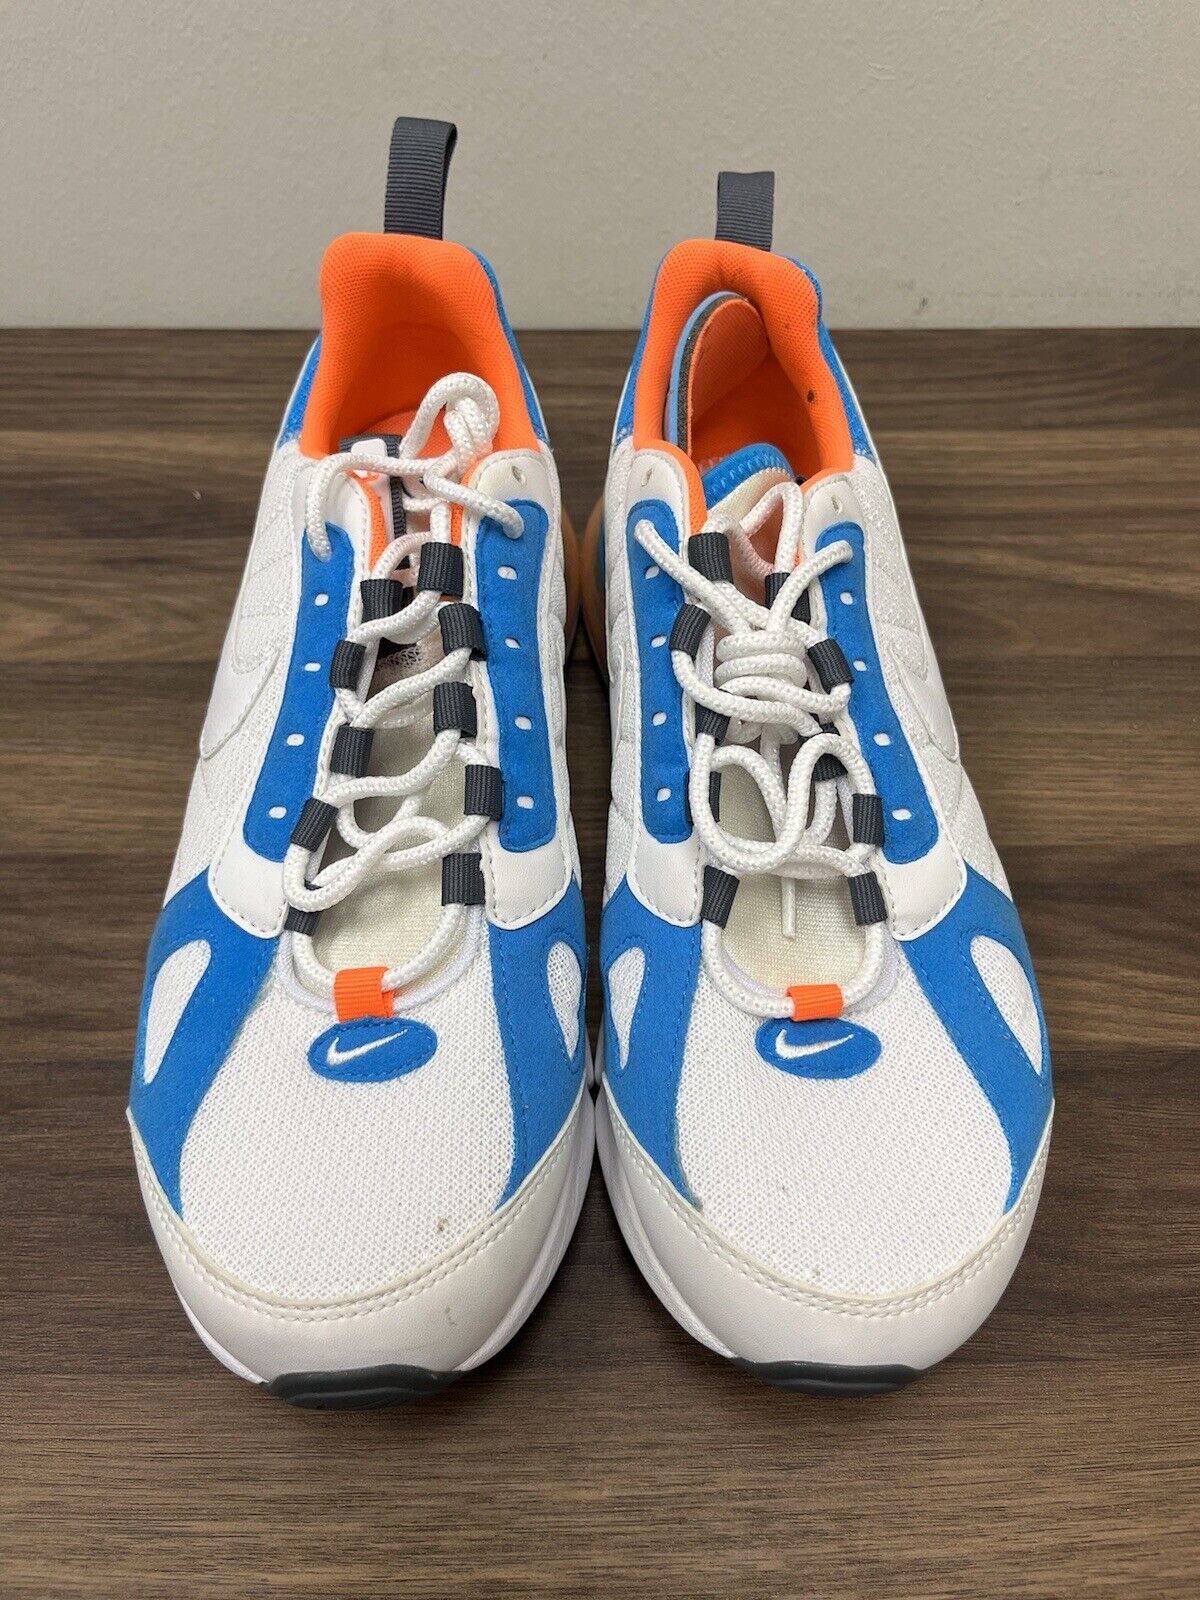 Nike Men’s Air Max 270 Futura Athletic Shoes White/Orange Size 8.5  AO1569-100